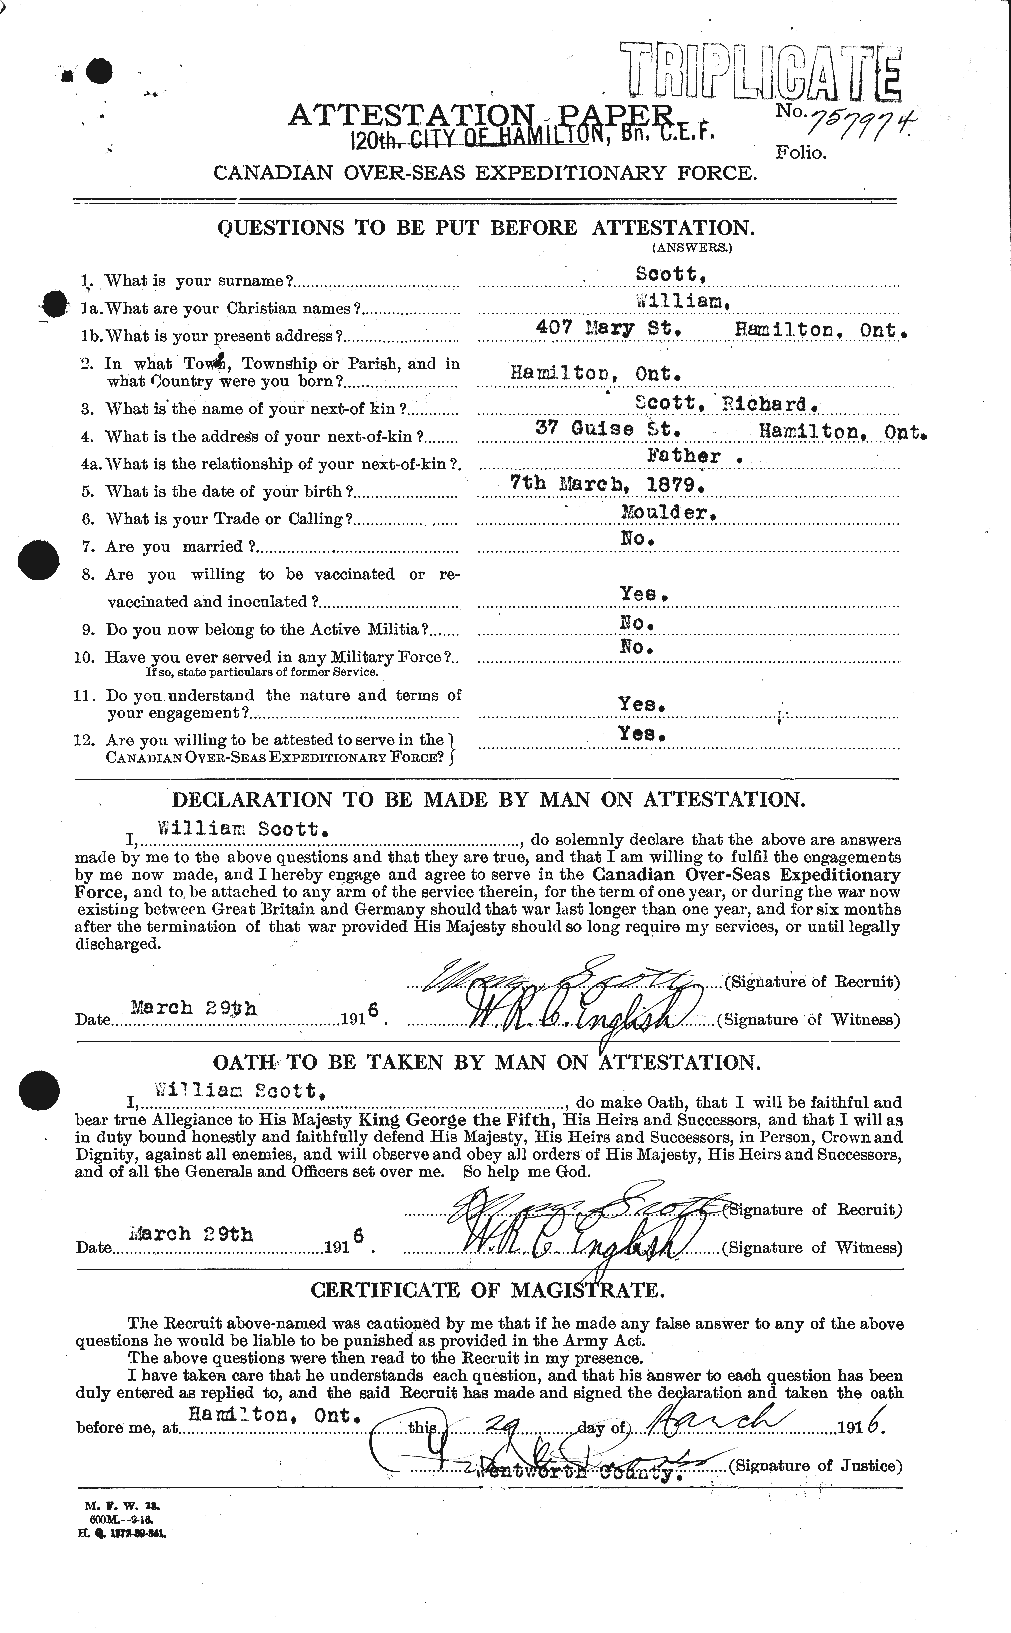 Dossiers du Personnel de la Première Guerre mondiale - CEC 087656a